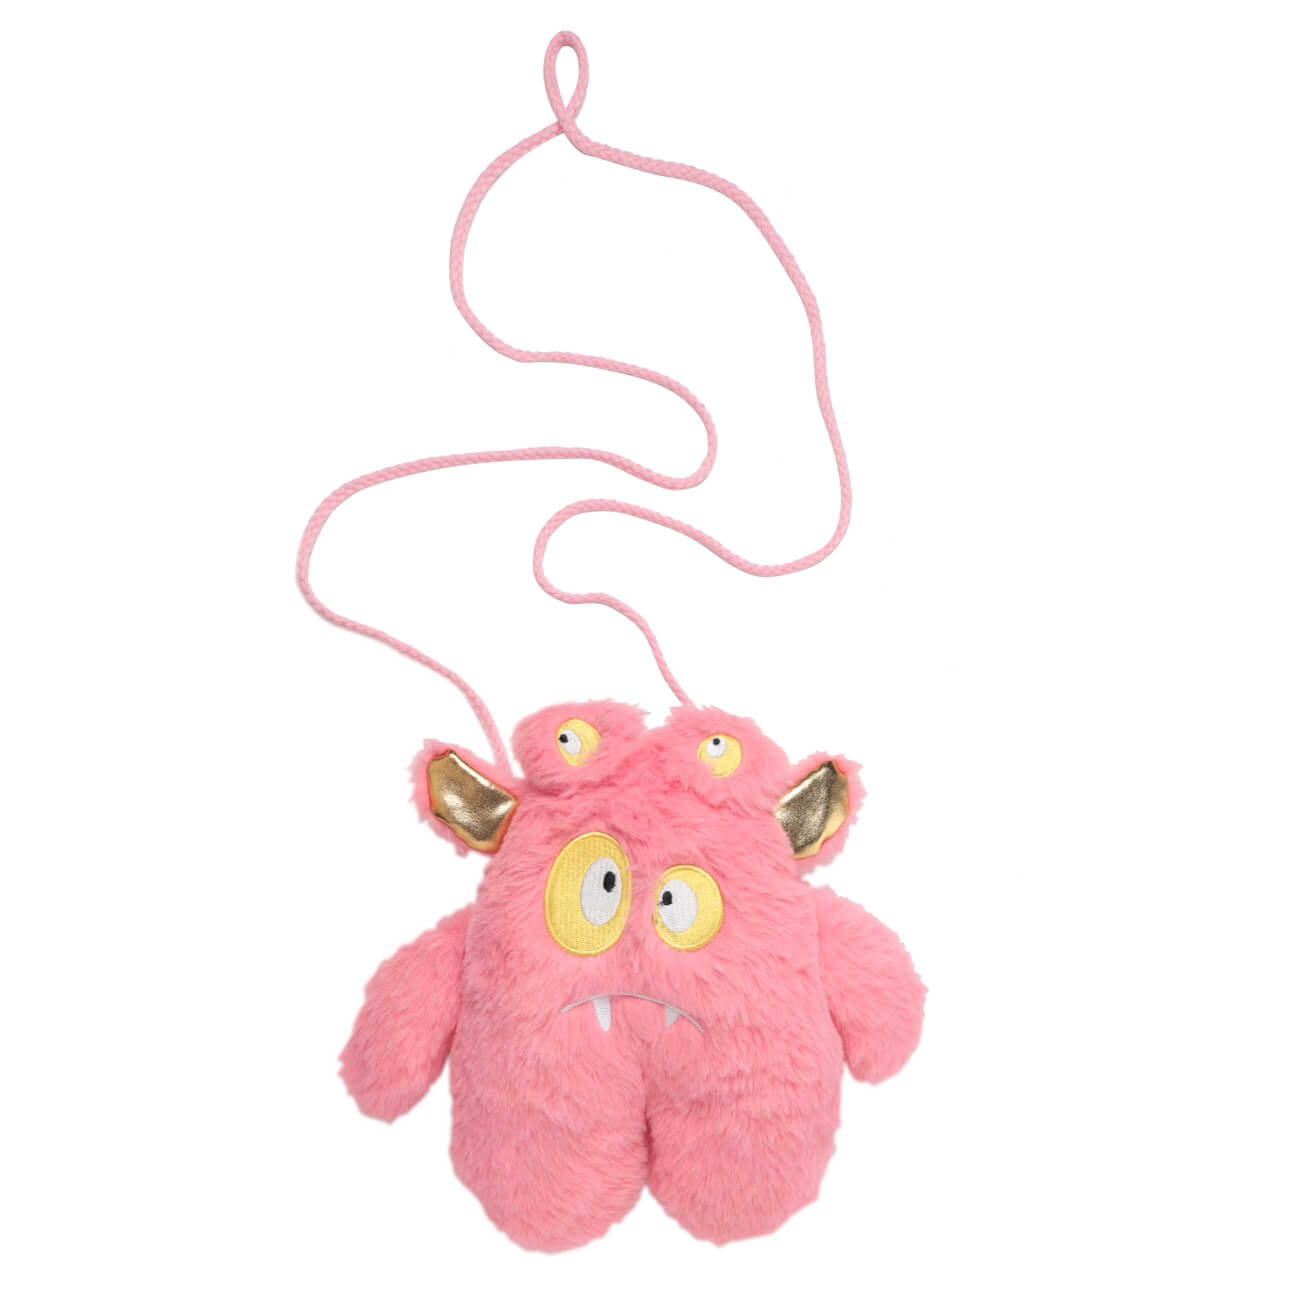 сумка игрушка 25х23 см искусственный мех розовая монстрик с ушами childhood Сумка-игрушка, 25х23 см, искусственный мех, розовая, Монстрик с ушами, Childhood